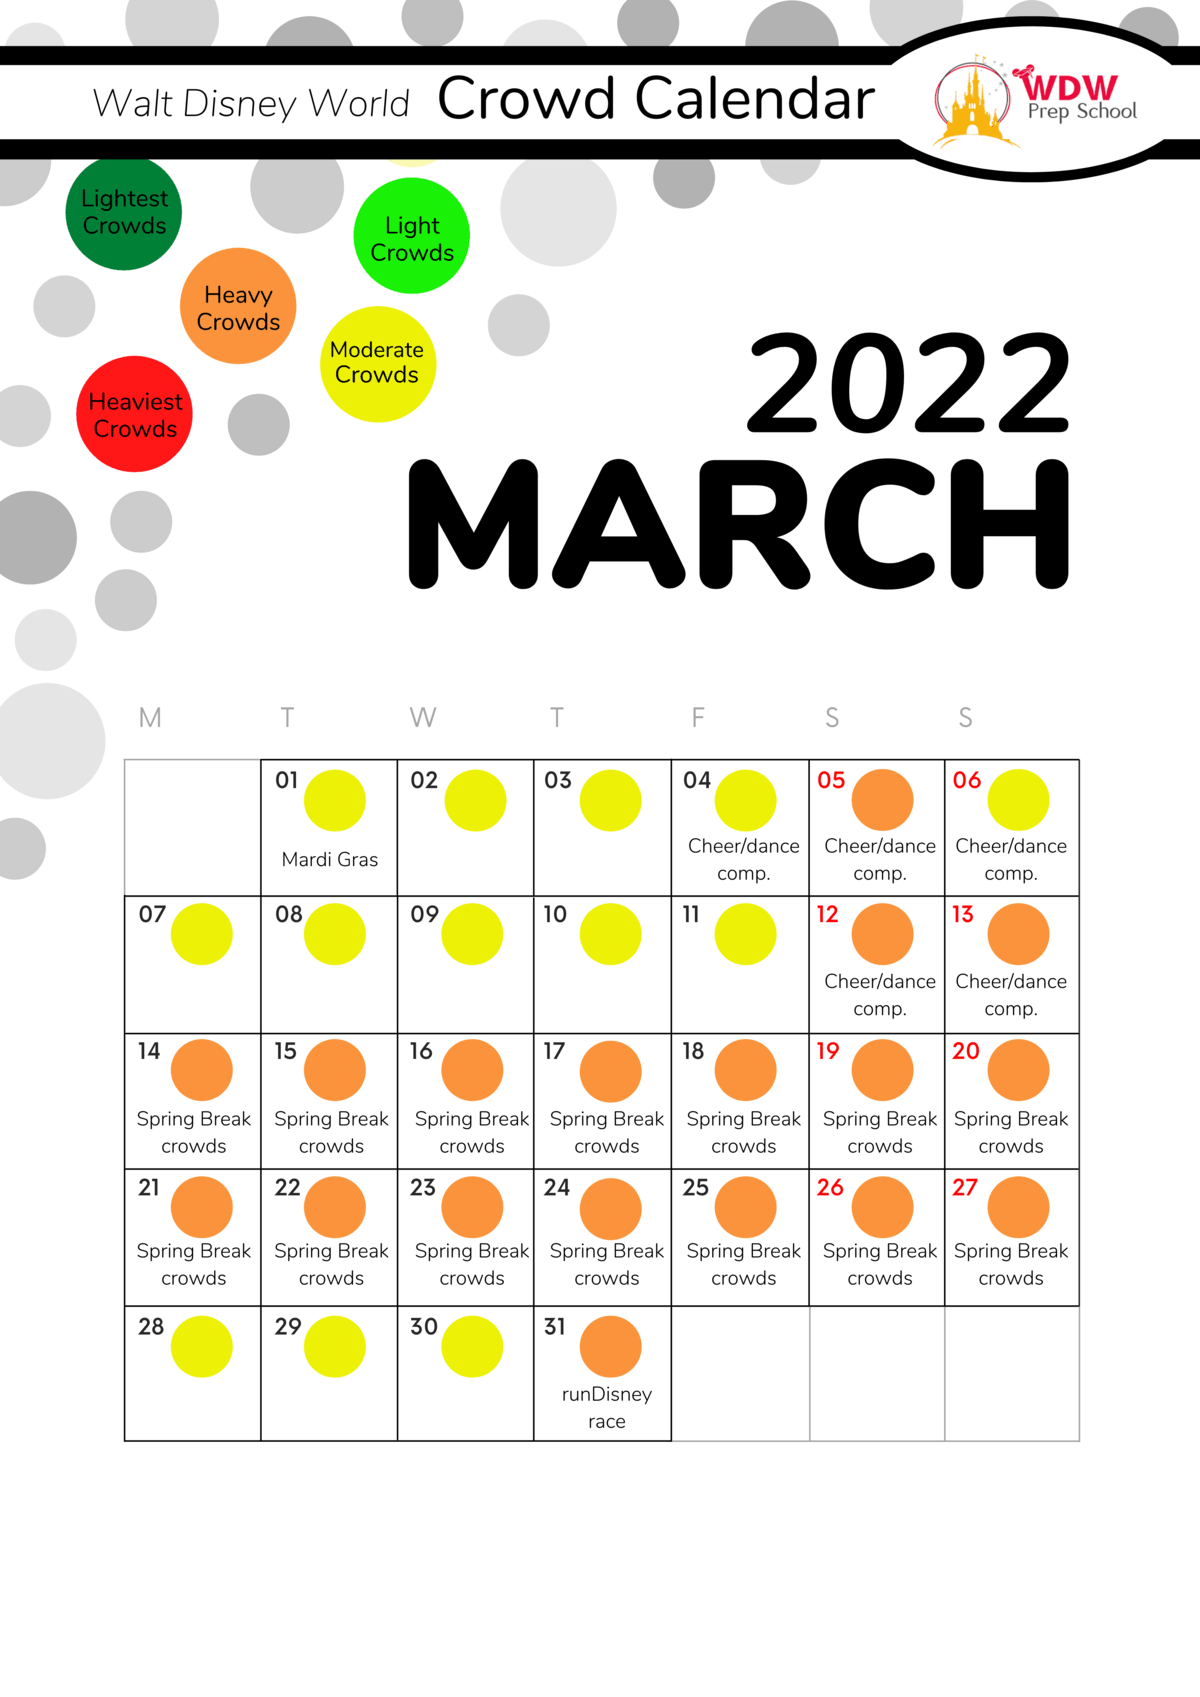 Catch Disney Crowd Calendar 2022 February